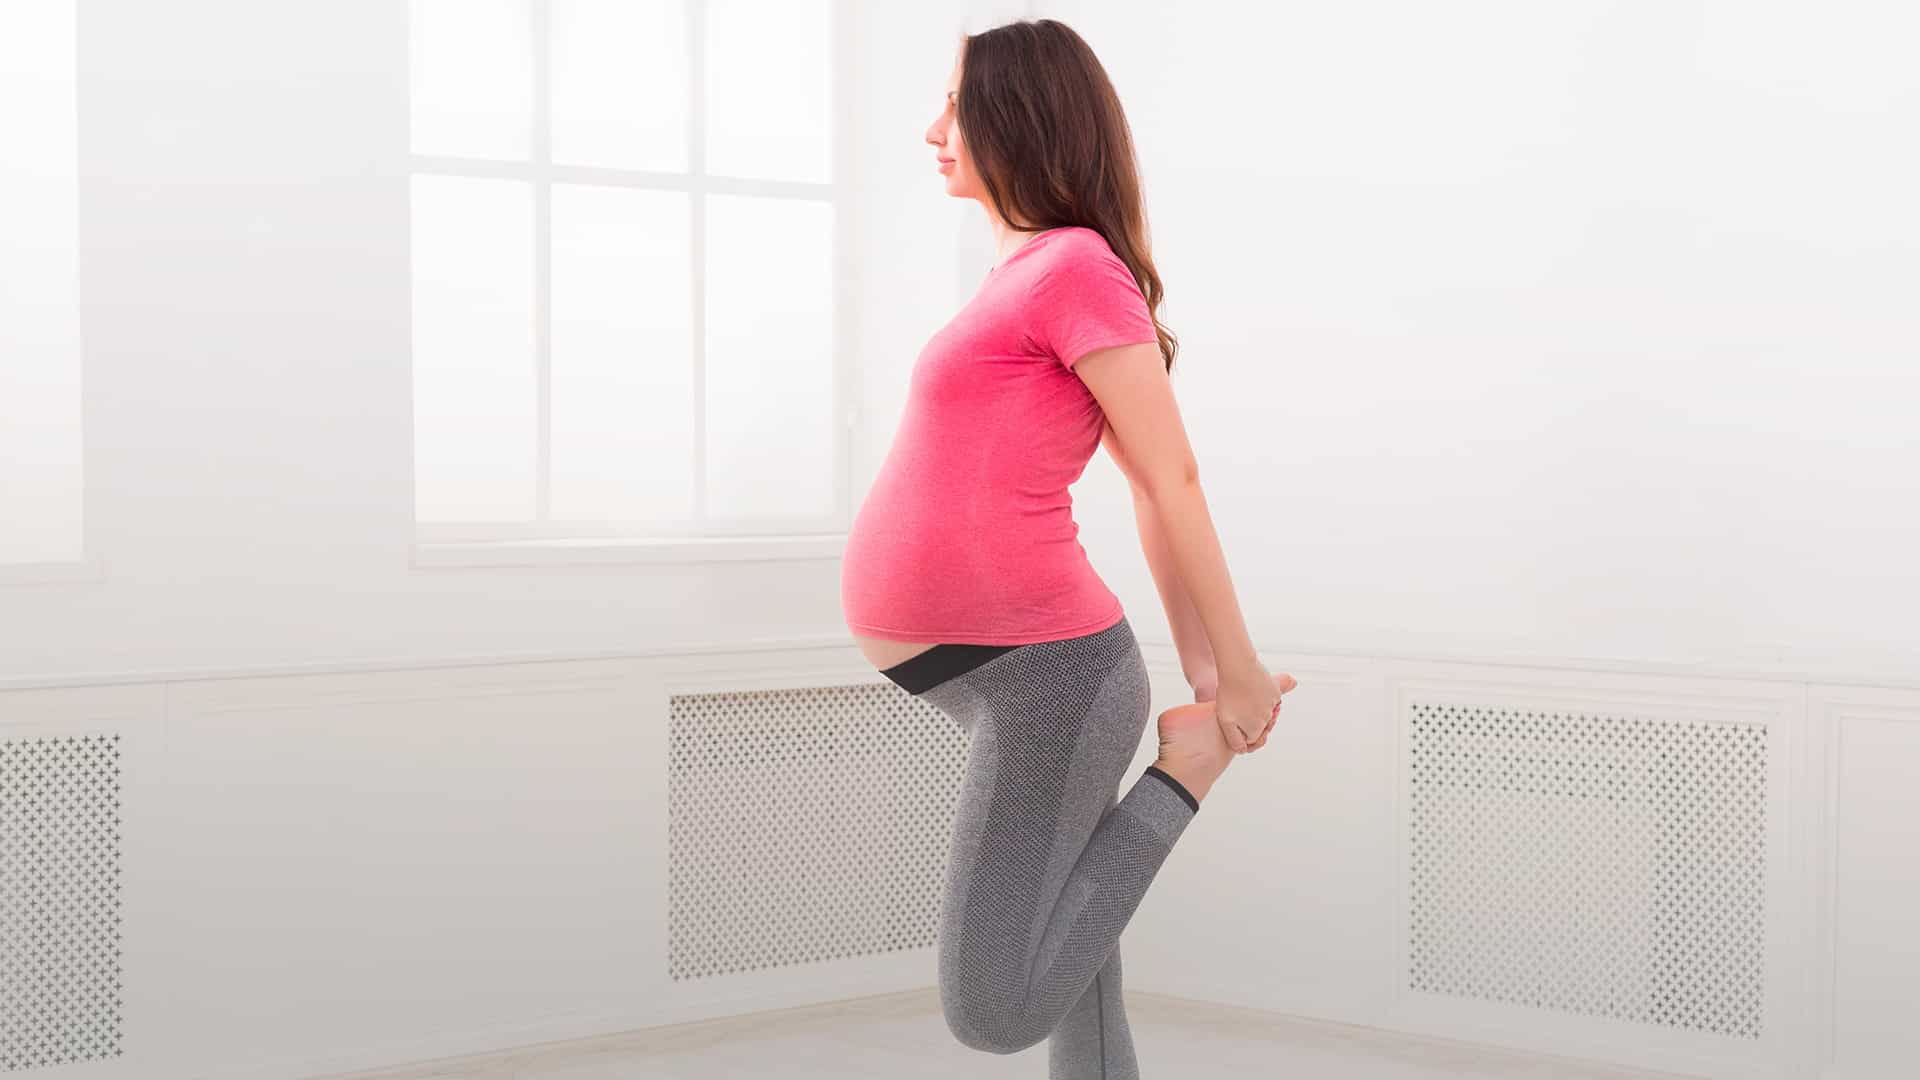 Exercícios físicos leves ajudam o sono na gravidez